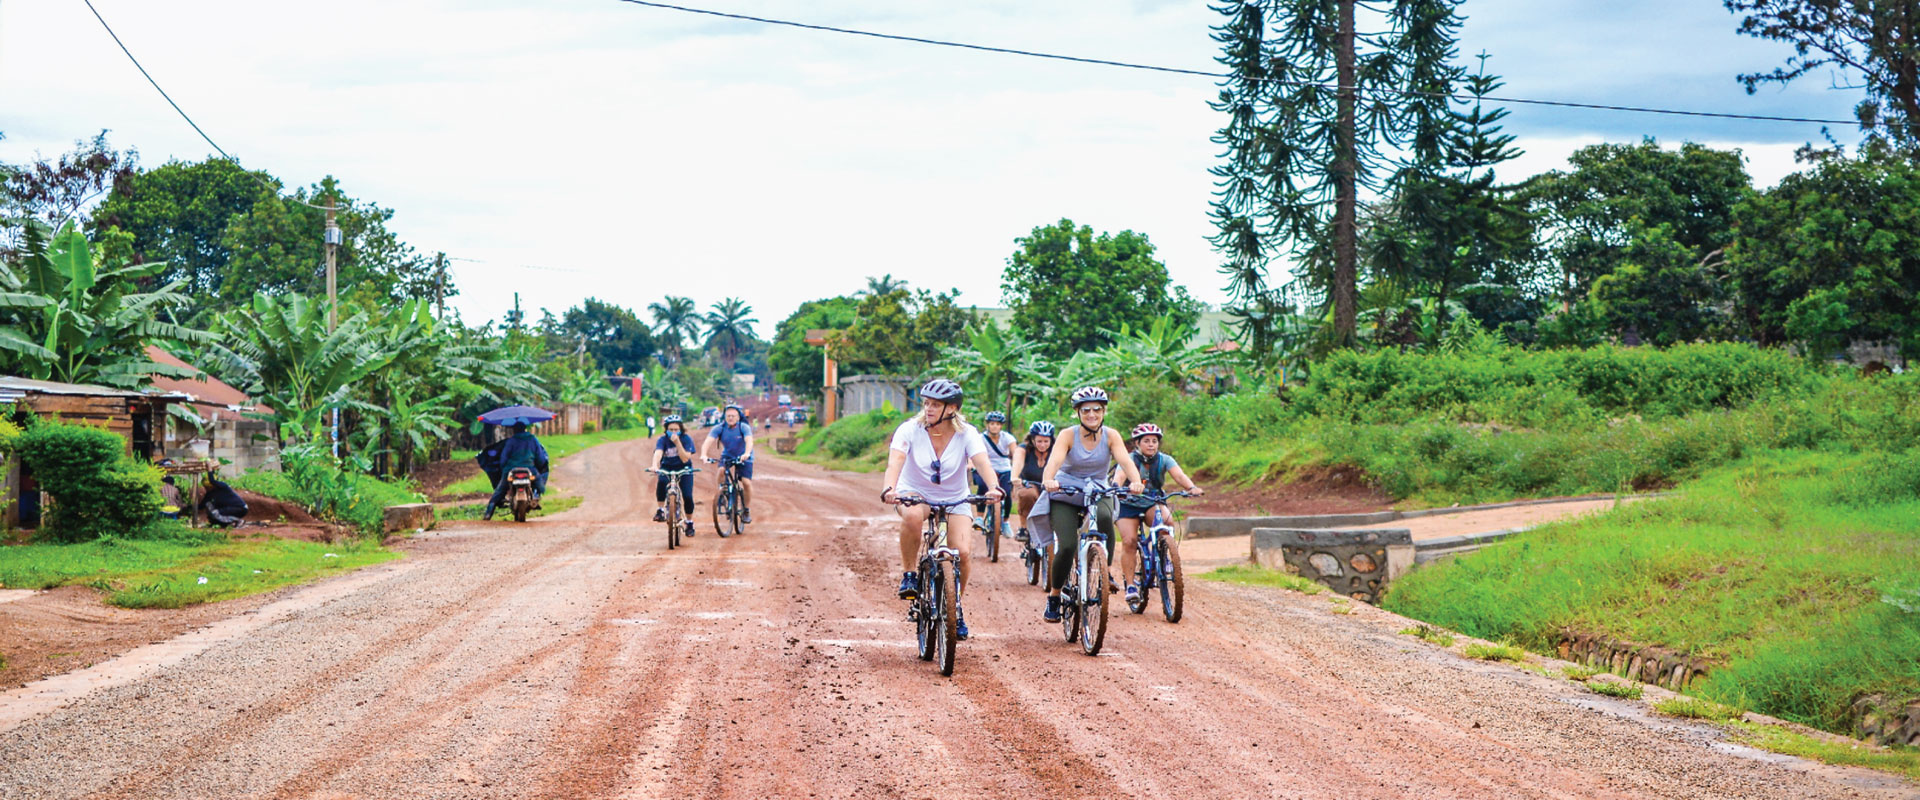 Uganda Cycling Safaris